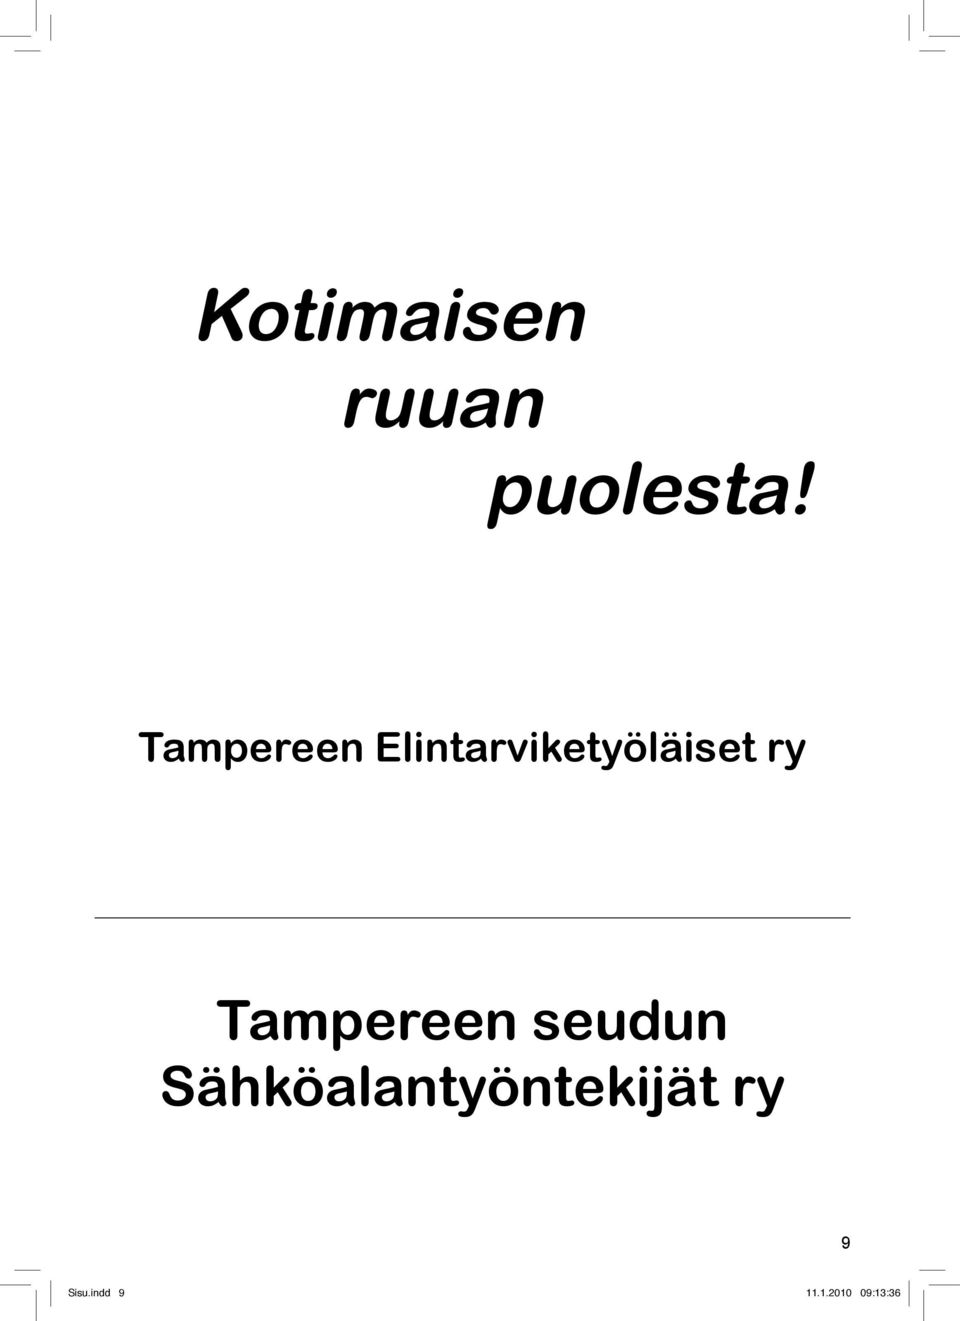 Tampereen seudun